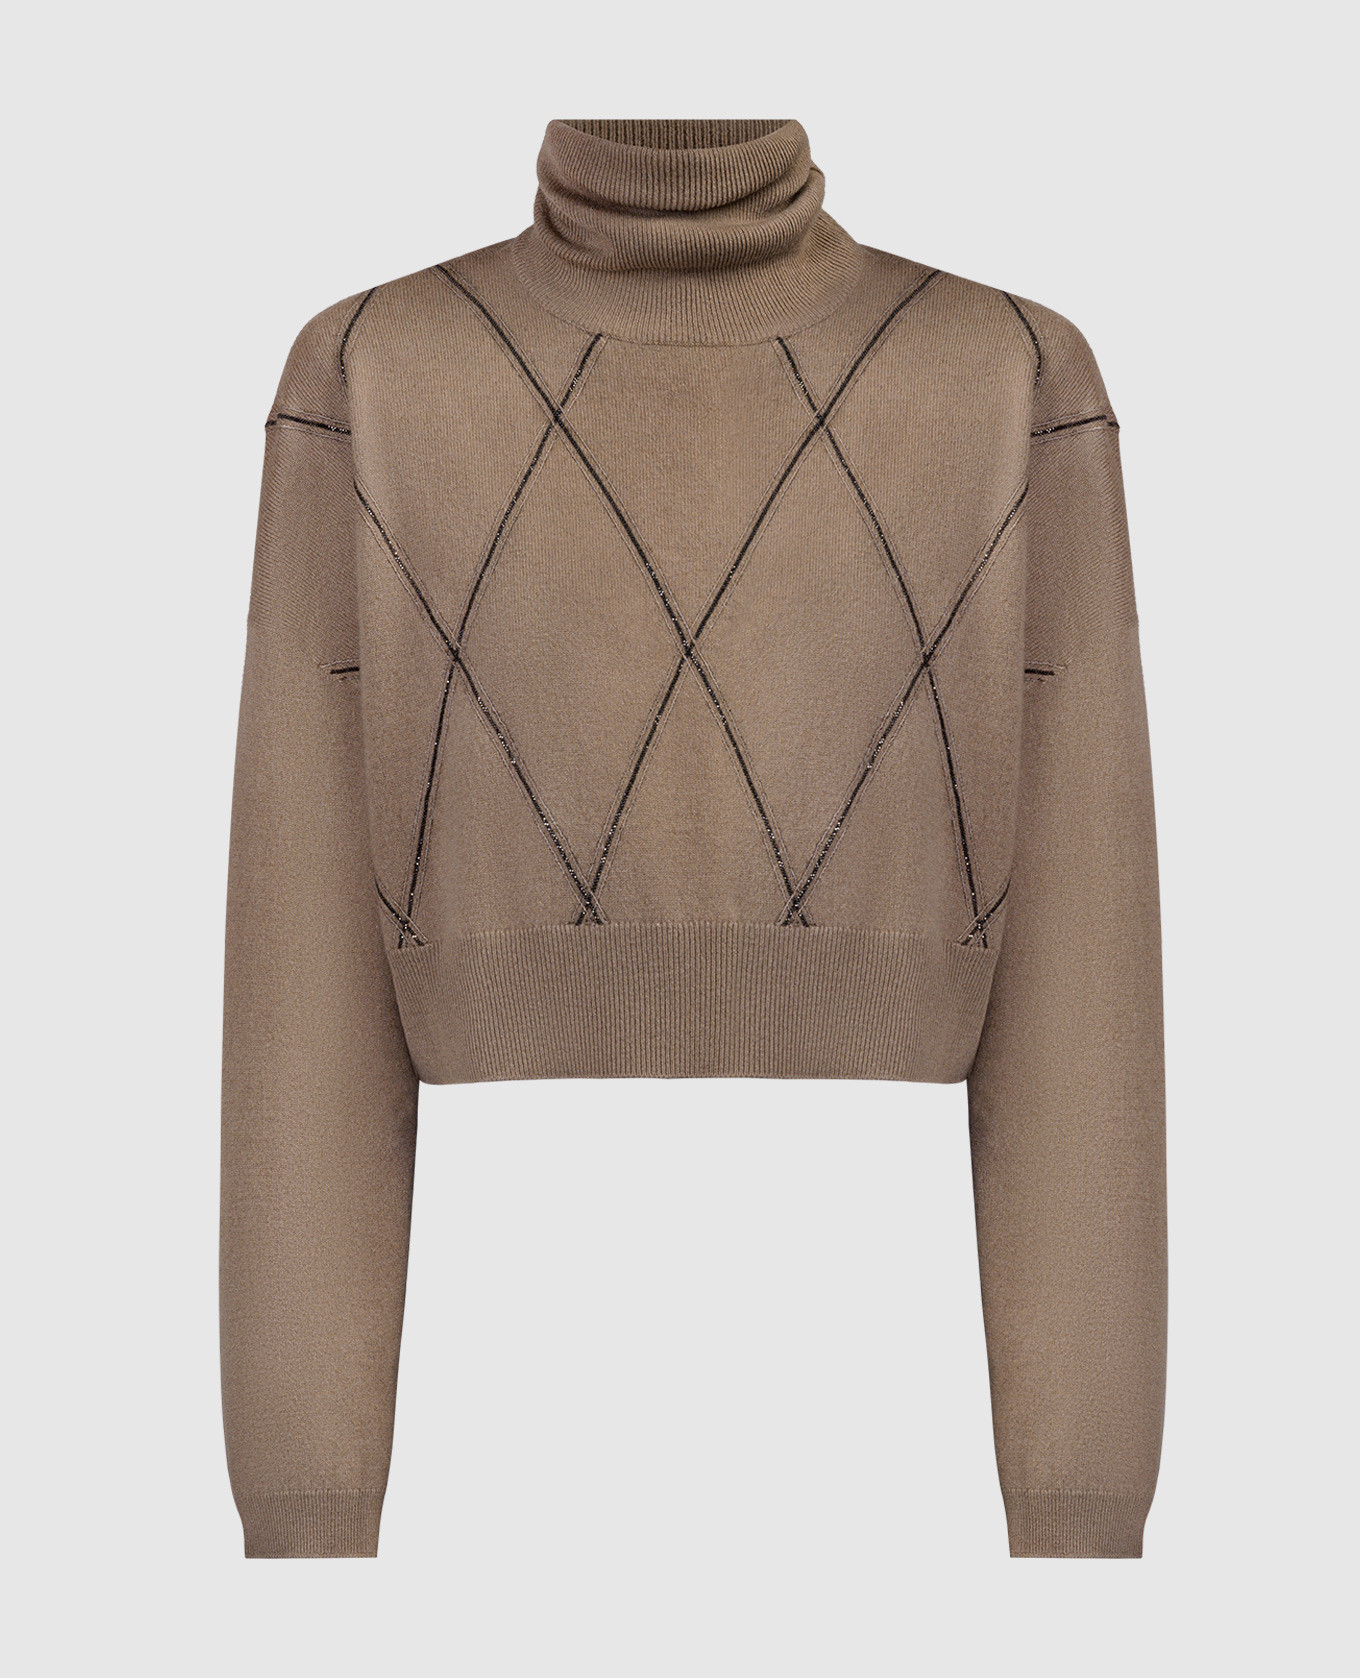 Коричневый свитер в геометрический узор с цепочкой мониля с эколатуни.